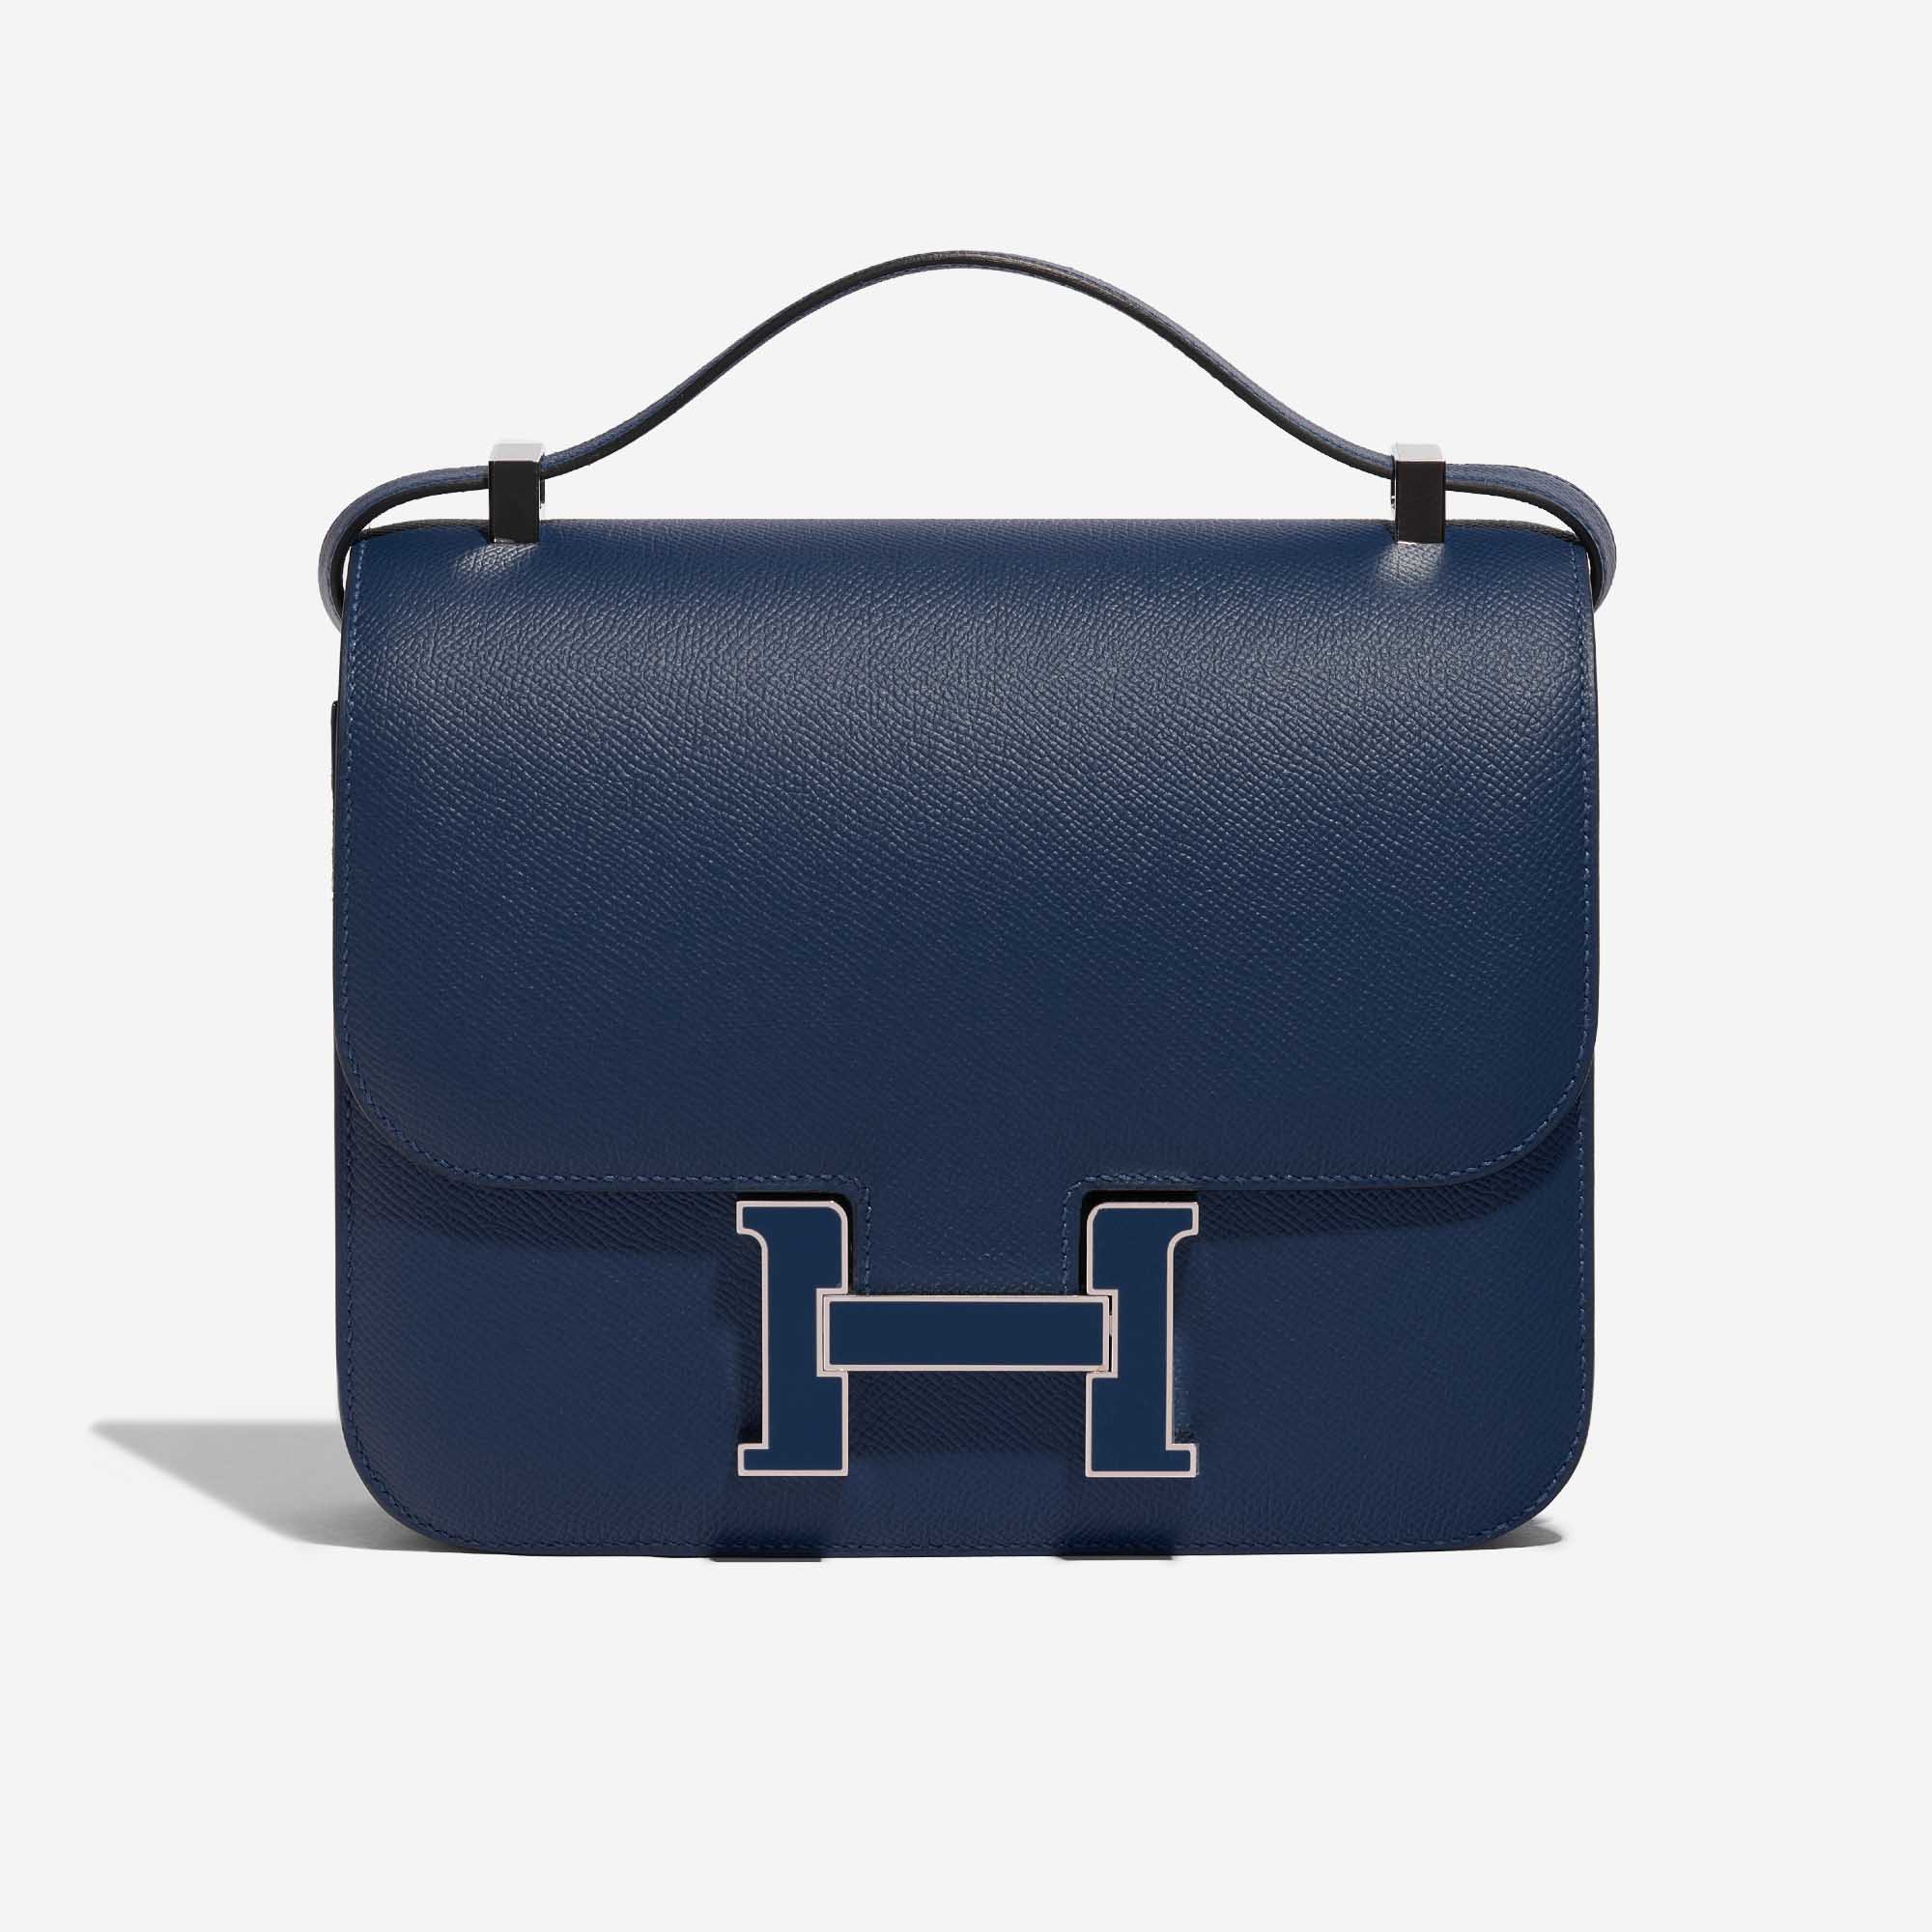 Hermès Constance shoulder bag epsom leather 24cm navy blue gold